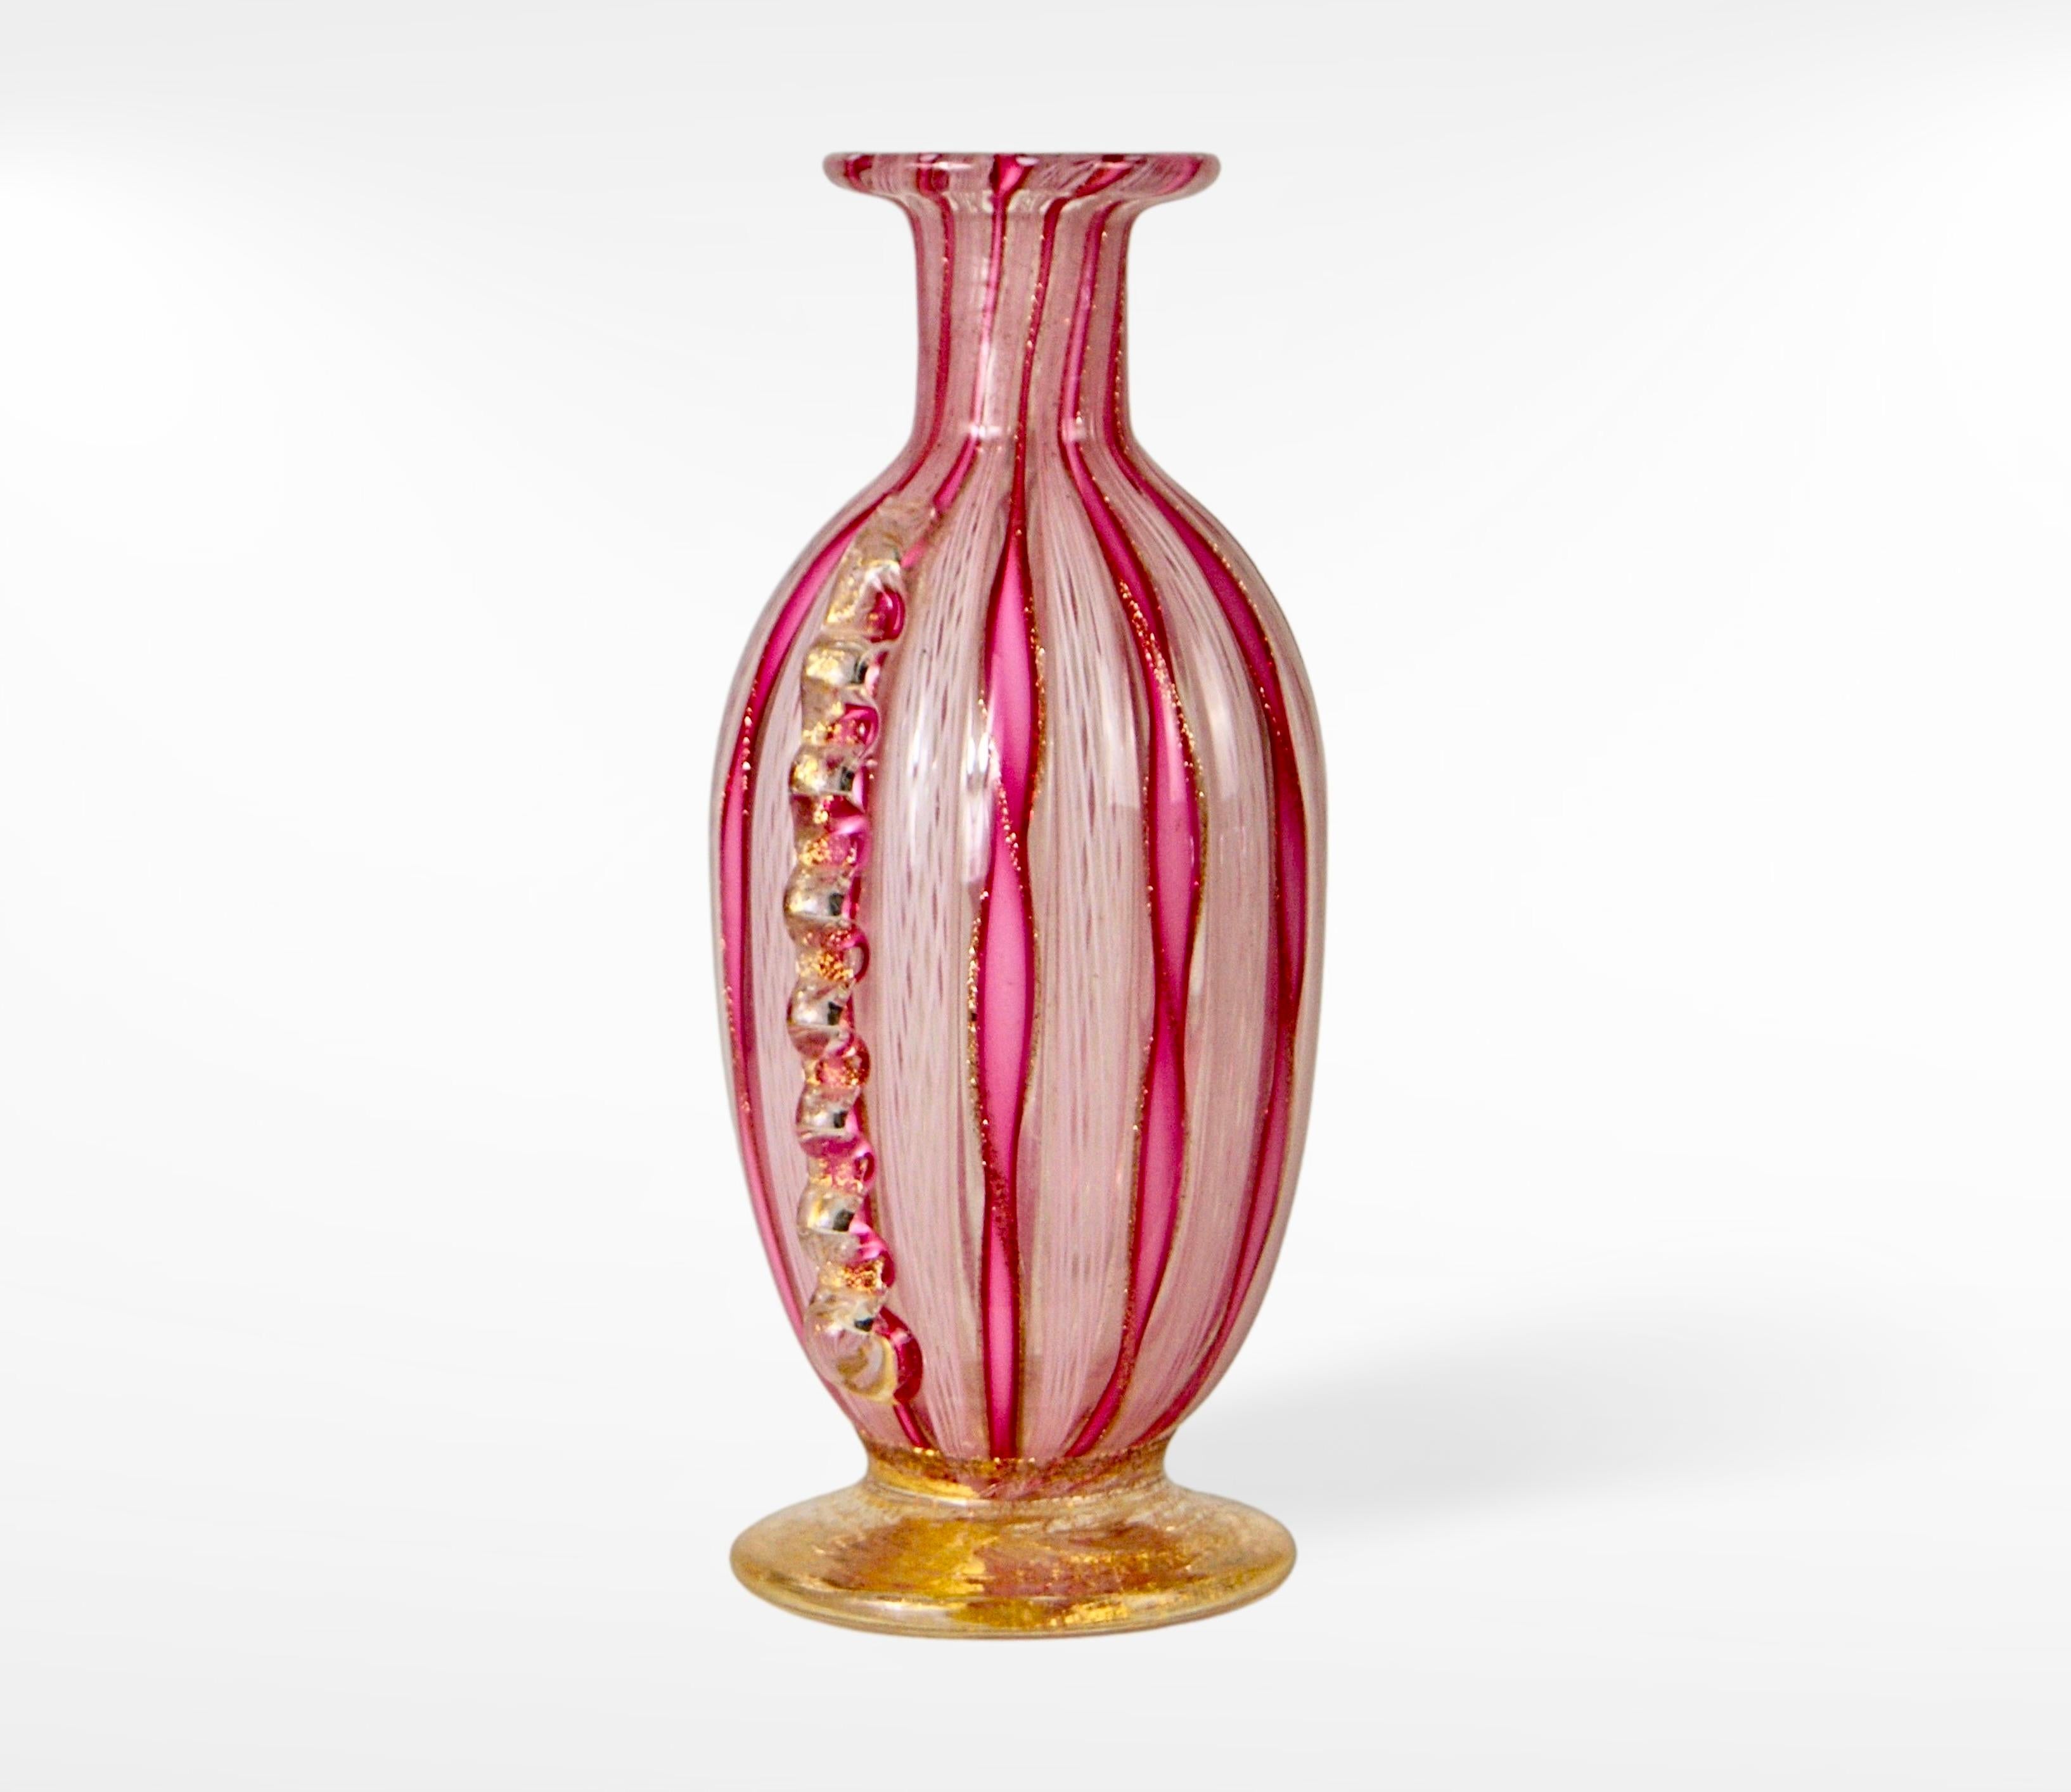 Vase du milieu du siècle en verre de Murano zanfirico filigrana avec canne appliquée.
Attribué à Fulvio Bianconi vers les années 1950.
Verre d'art en latticino rose, blanc et or et aventurine.
Cette parfaite petite pièce de cordonato d'oro n'est pas